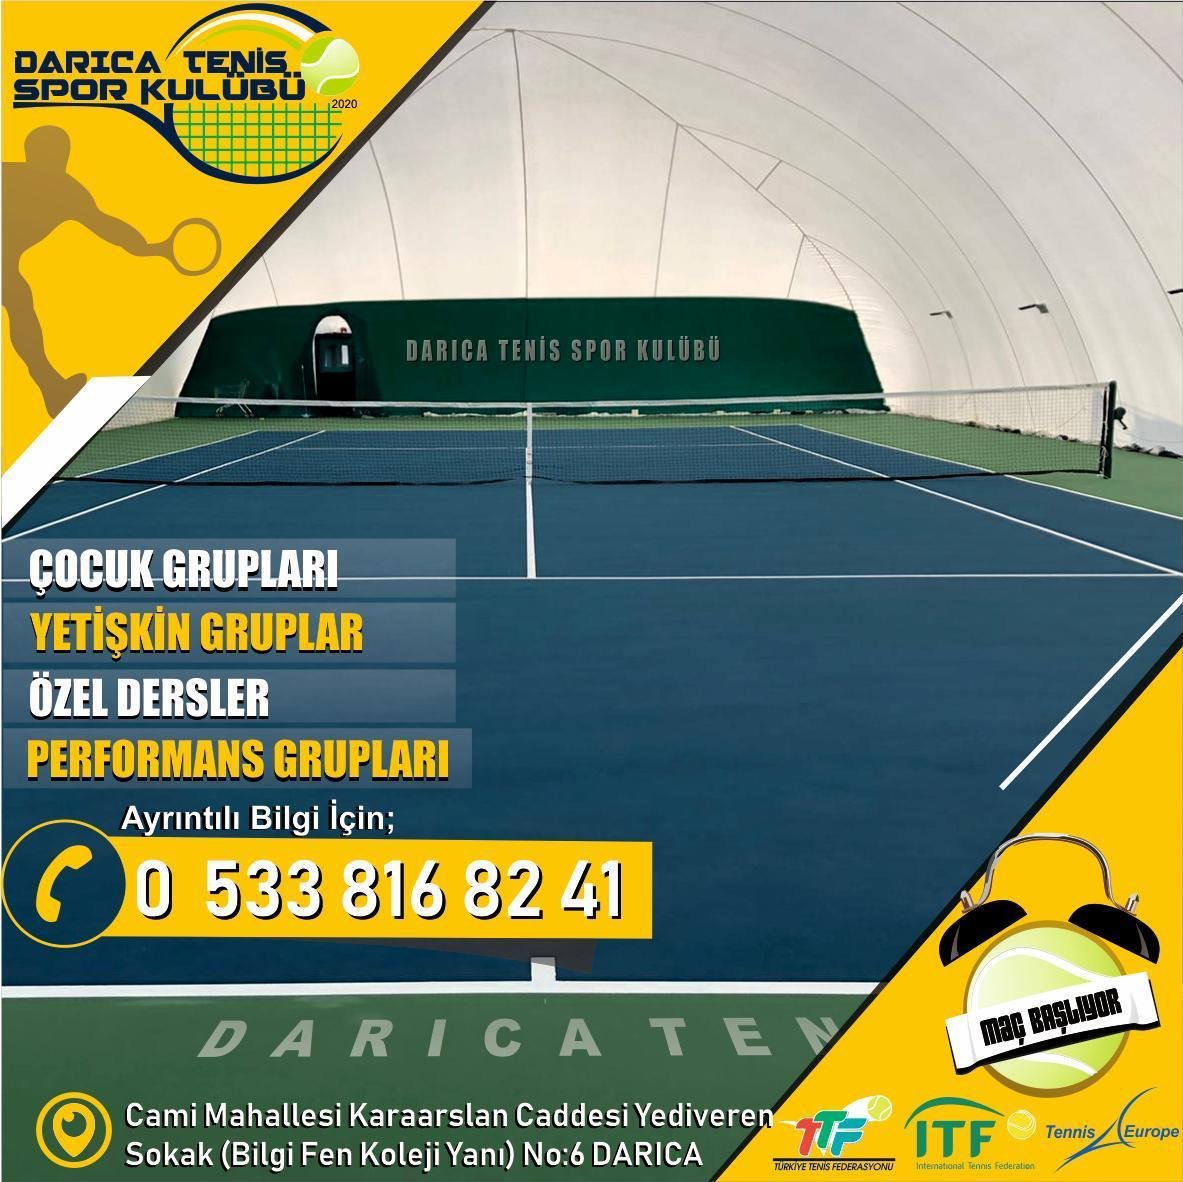 Darıca'da Tenis Spor kulübü kuruldu